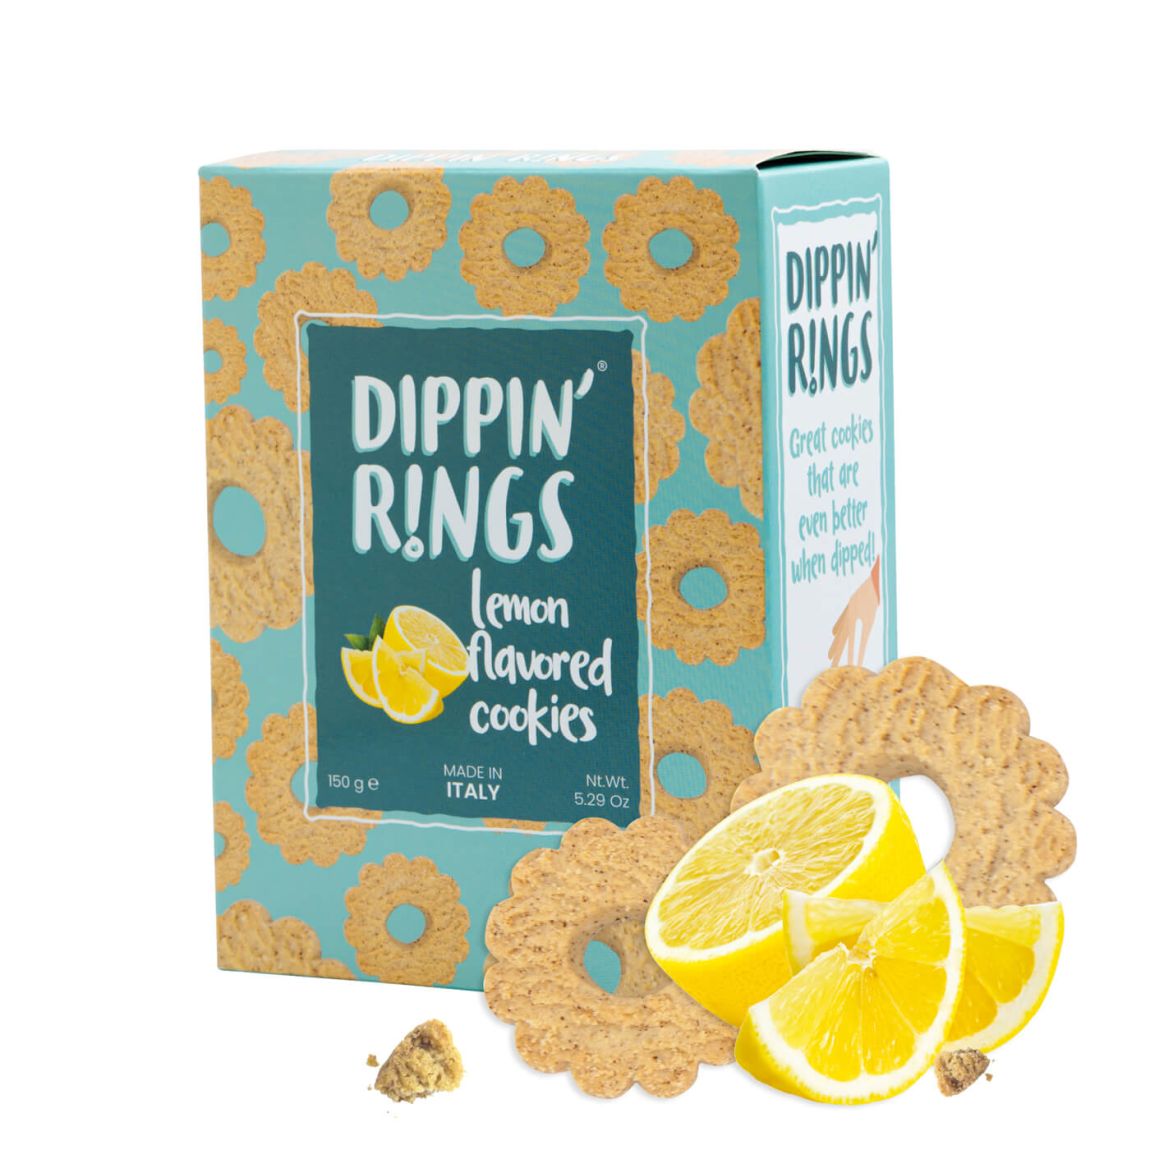 DippinRings-Lemon